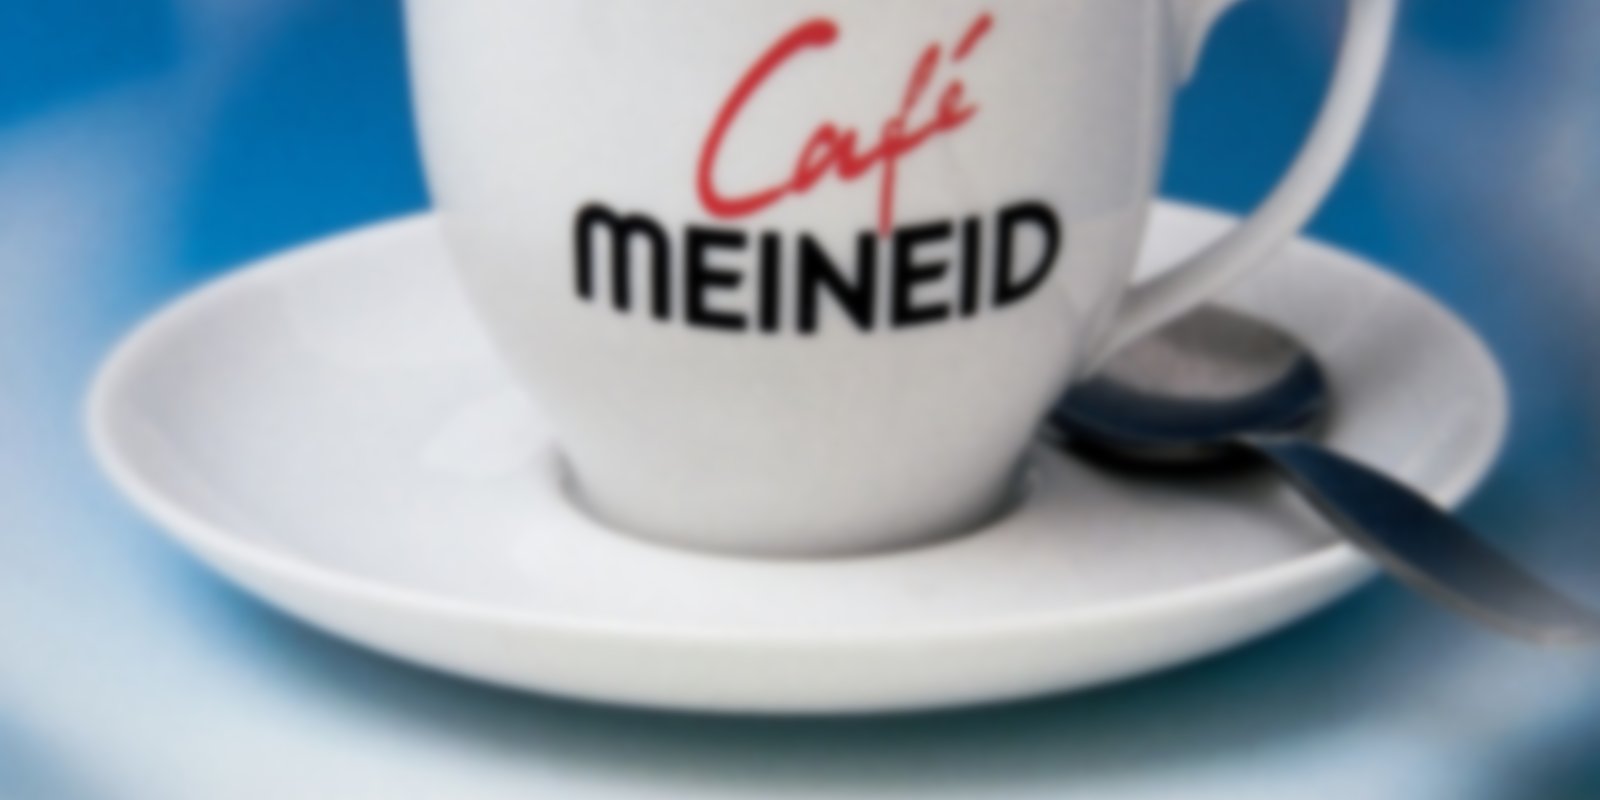 Café Meineid 1